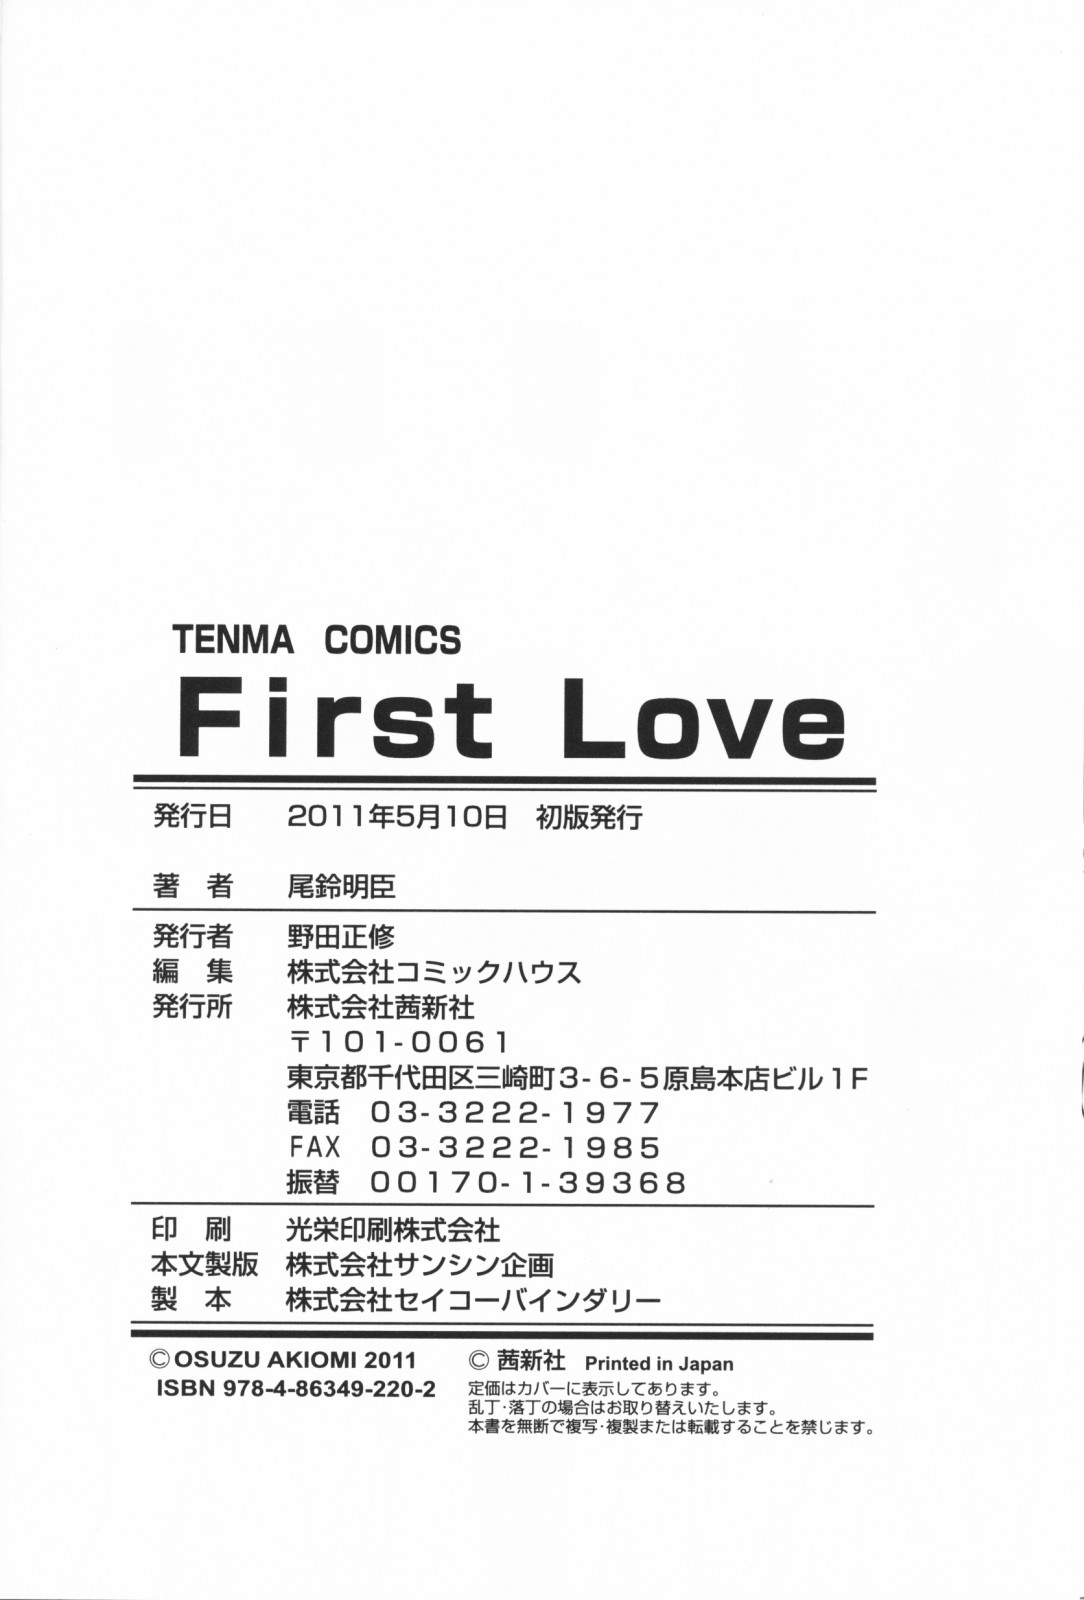 [尾鈴明臣] First Love